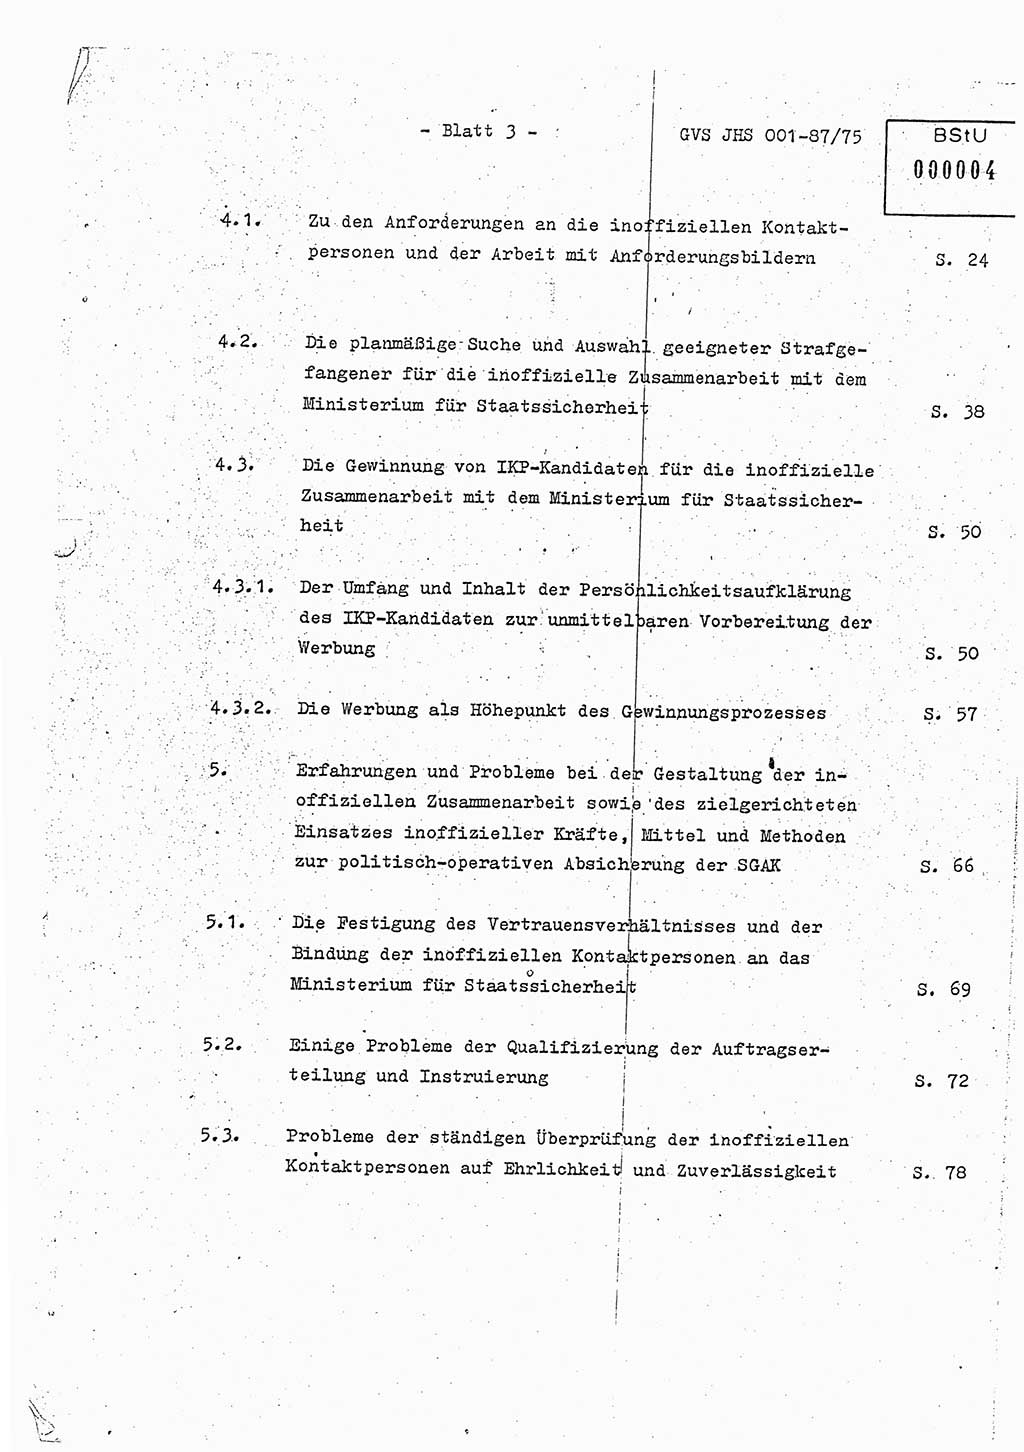 Diplomarbeit Hauptmann Volkmar Heinz (Abt. ⅩⅣ), Oberleutnant Lothar Rüdiger (BV Lpz. Abt. Ⅺ), Ministerium für Staatssicherheit (MfS) [Deutsche Demokratische Republik (DDR)], Juristische Hochschule (JHS), Geheime Verschlußsache (GVS) o001-87/75, Potsdam 1975, Seite 3 (Dipl.-Arb. MfS DDR JHS GVS o001-87/75 1975, S. 3)